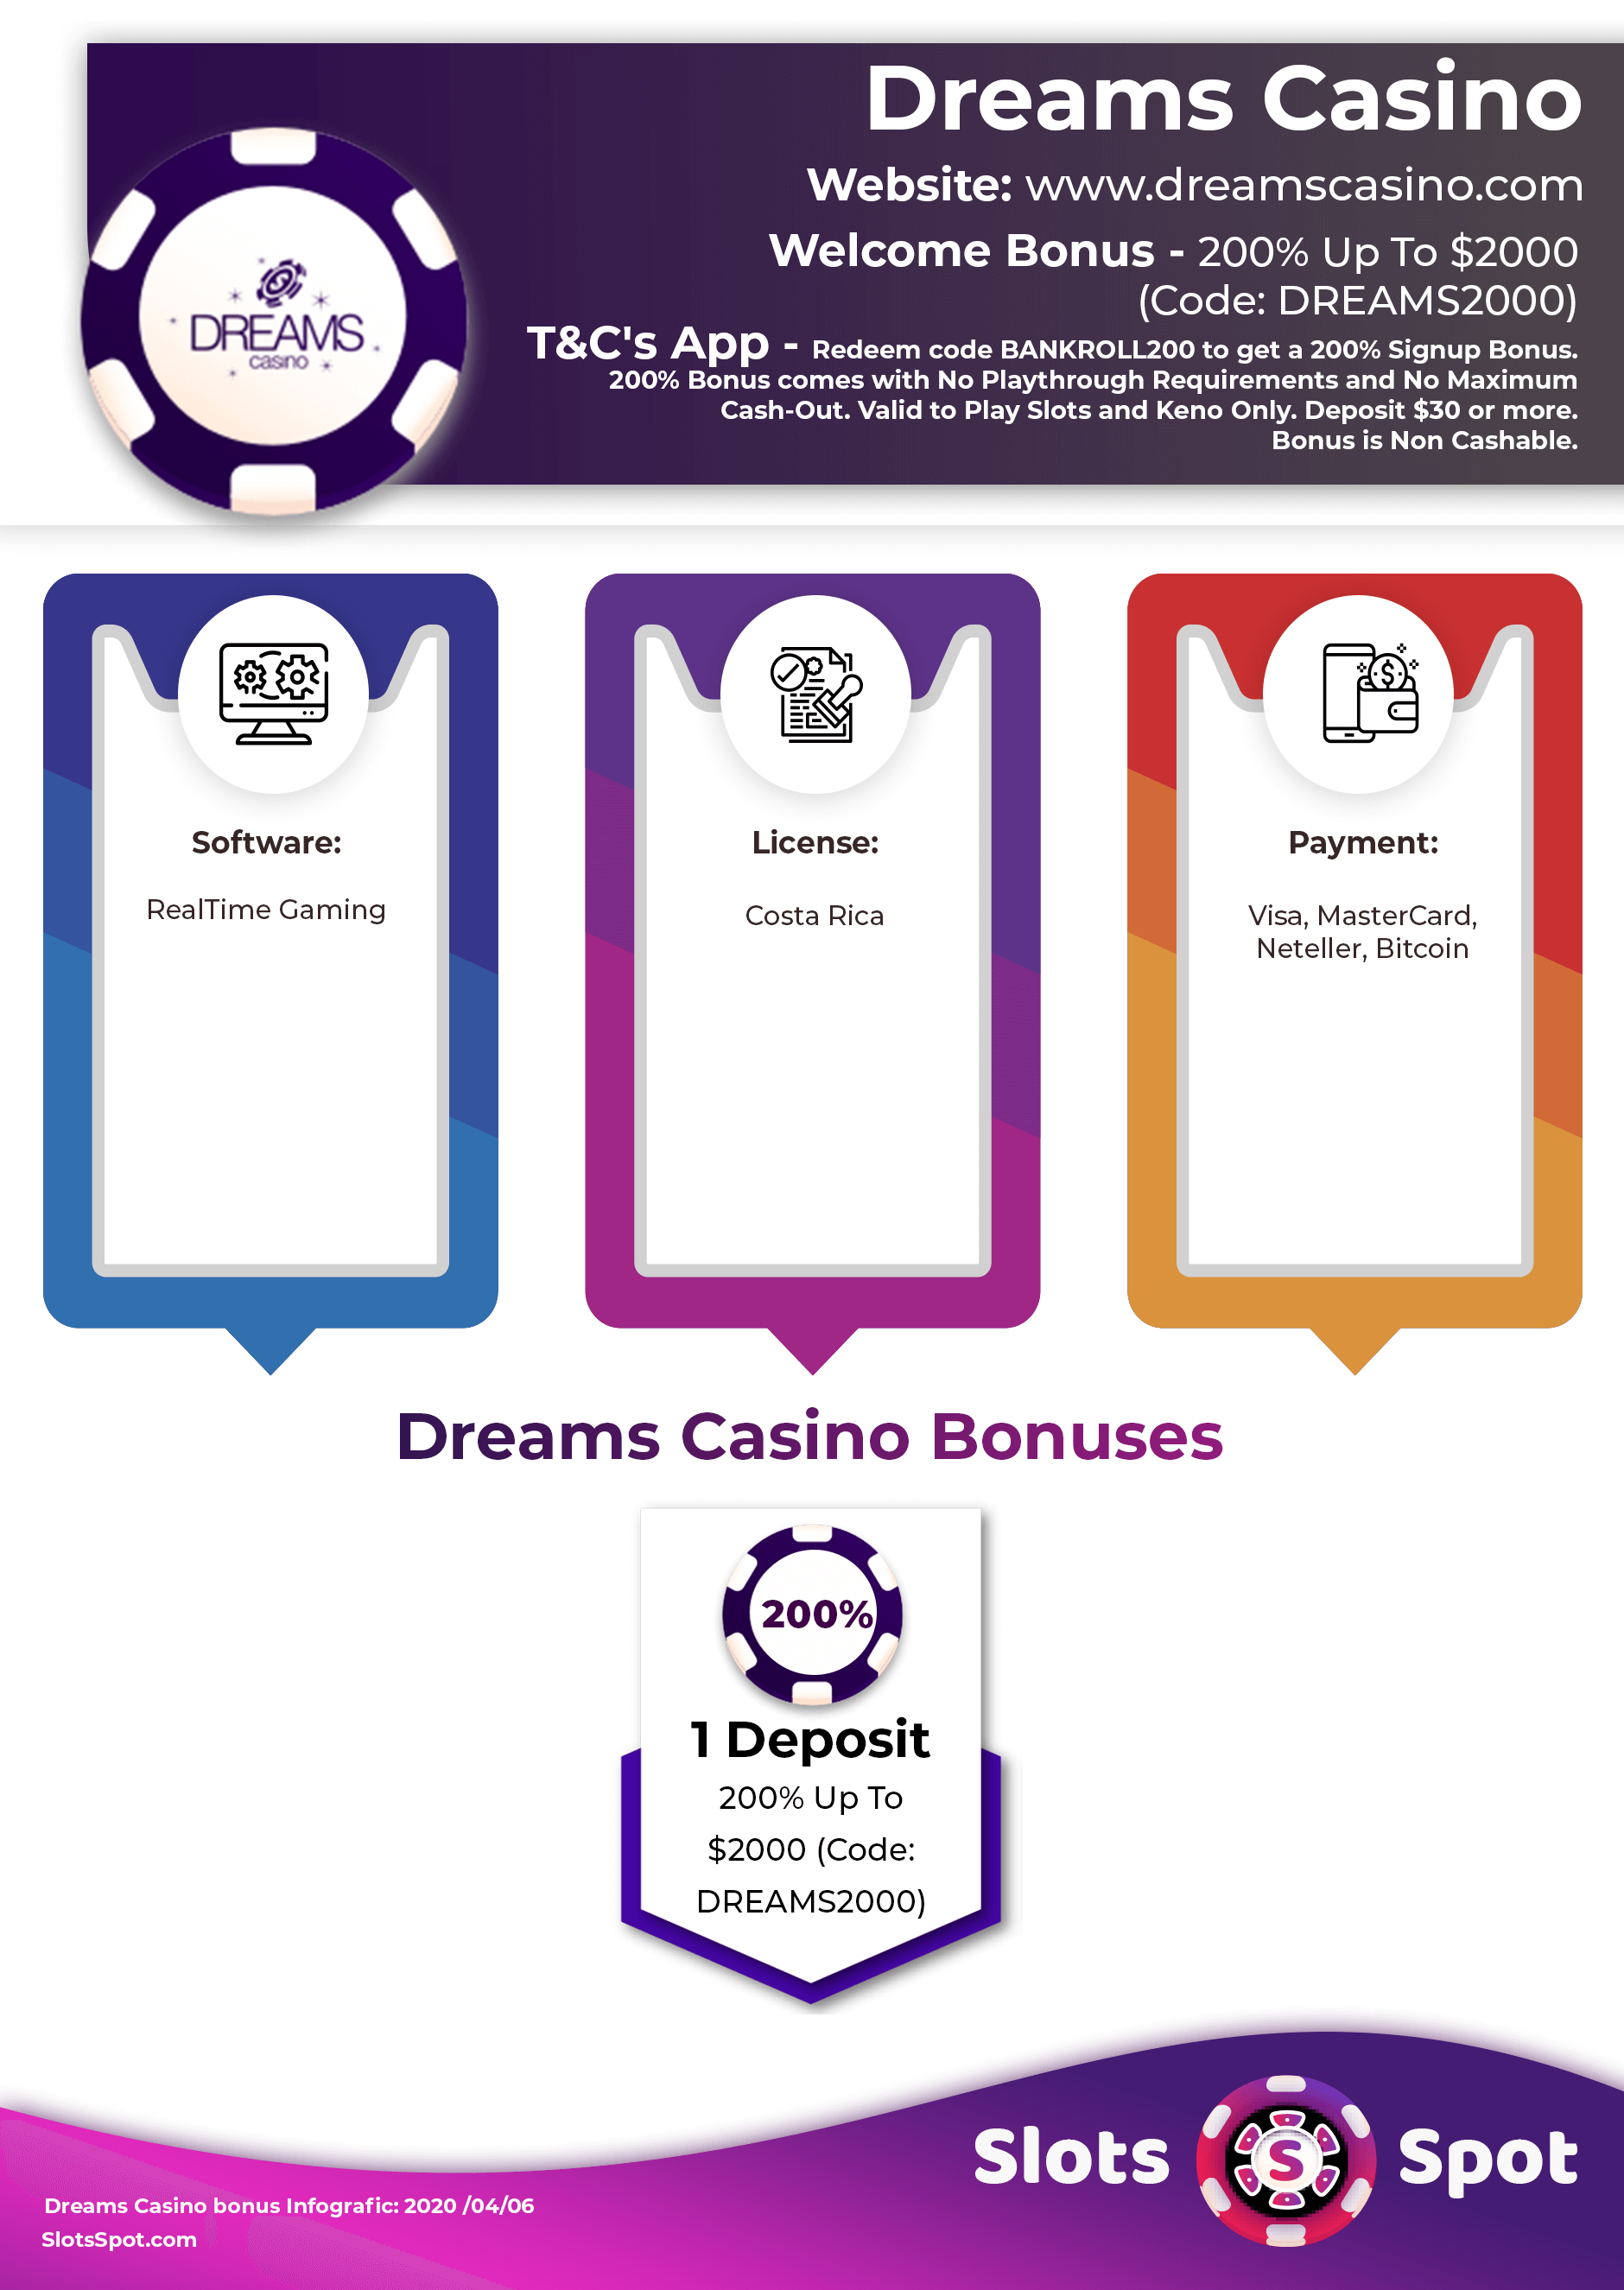 voodoo dreams casino no deposit